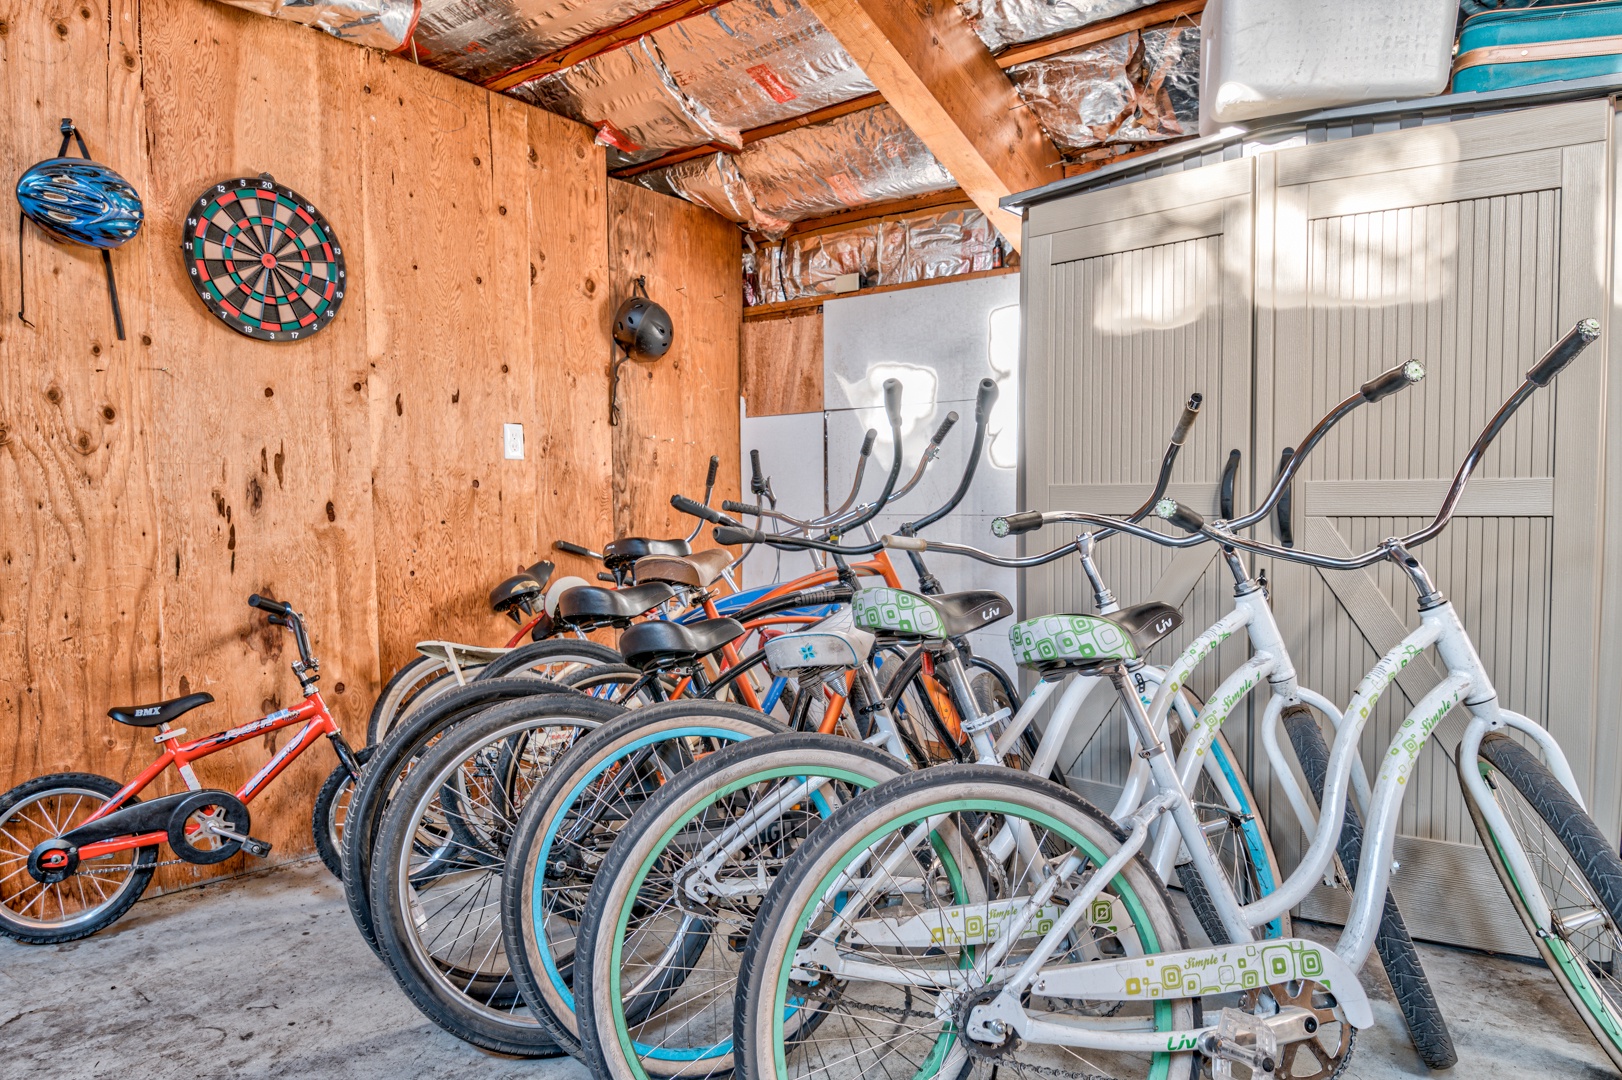 Bikes/Garage